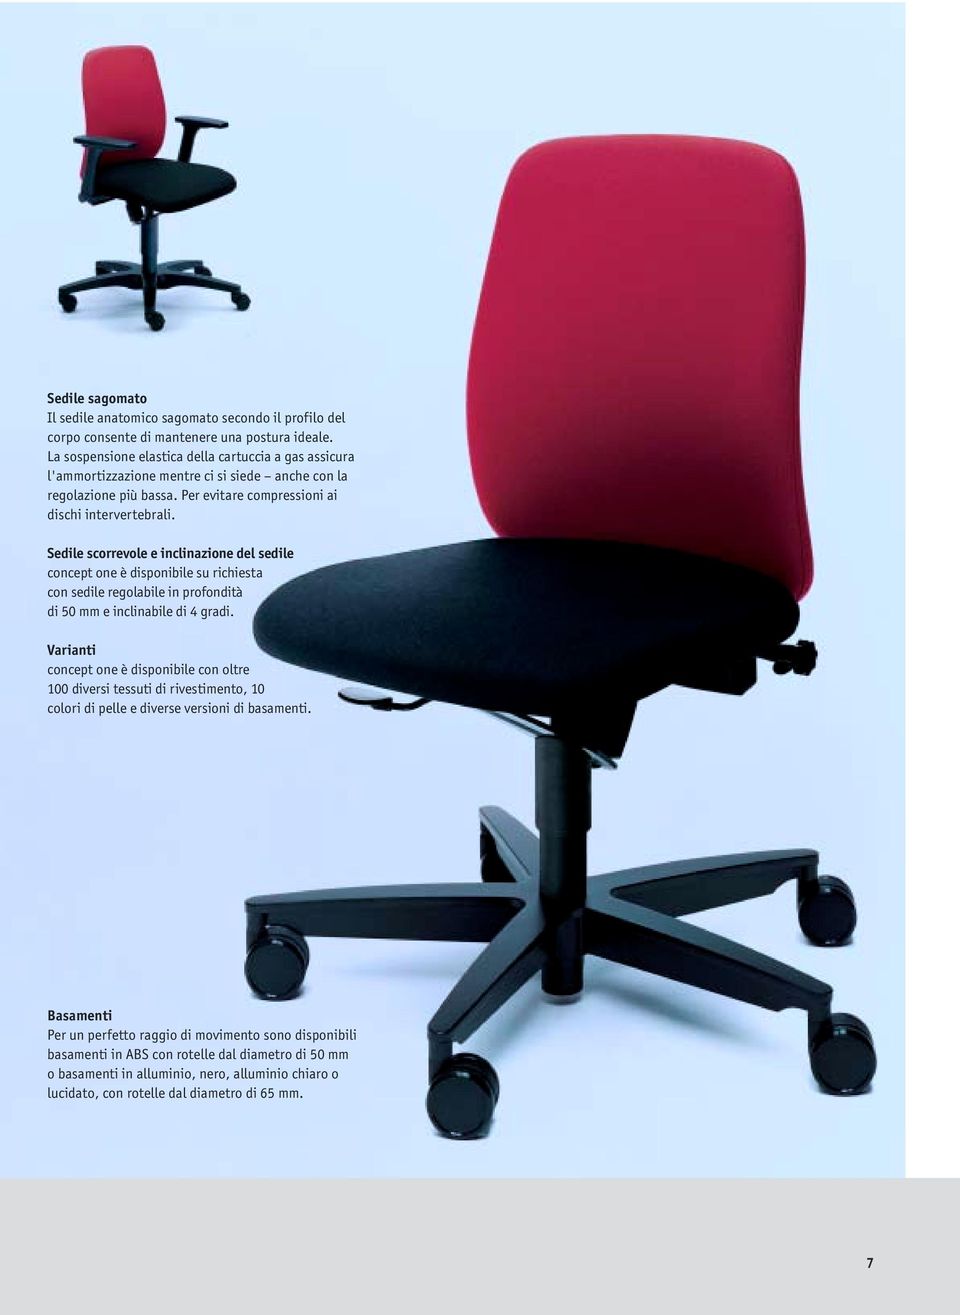 Sedile scorrevole e inclinazione del sedile concept one è disponibile su richiesta con sedile regolabile in profondità di 50 mm e inclinabile di 4 gradi.